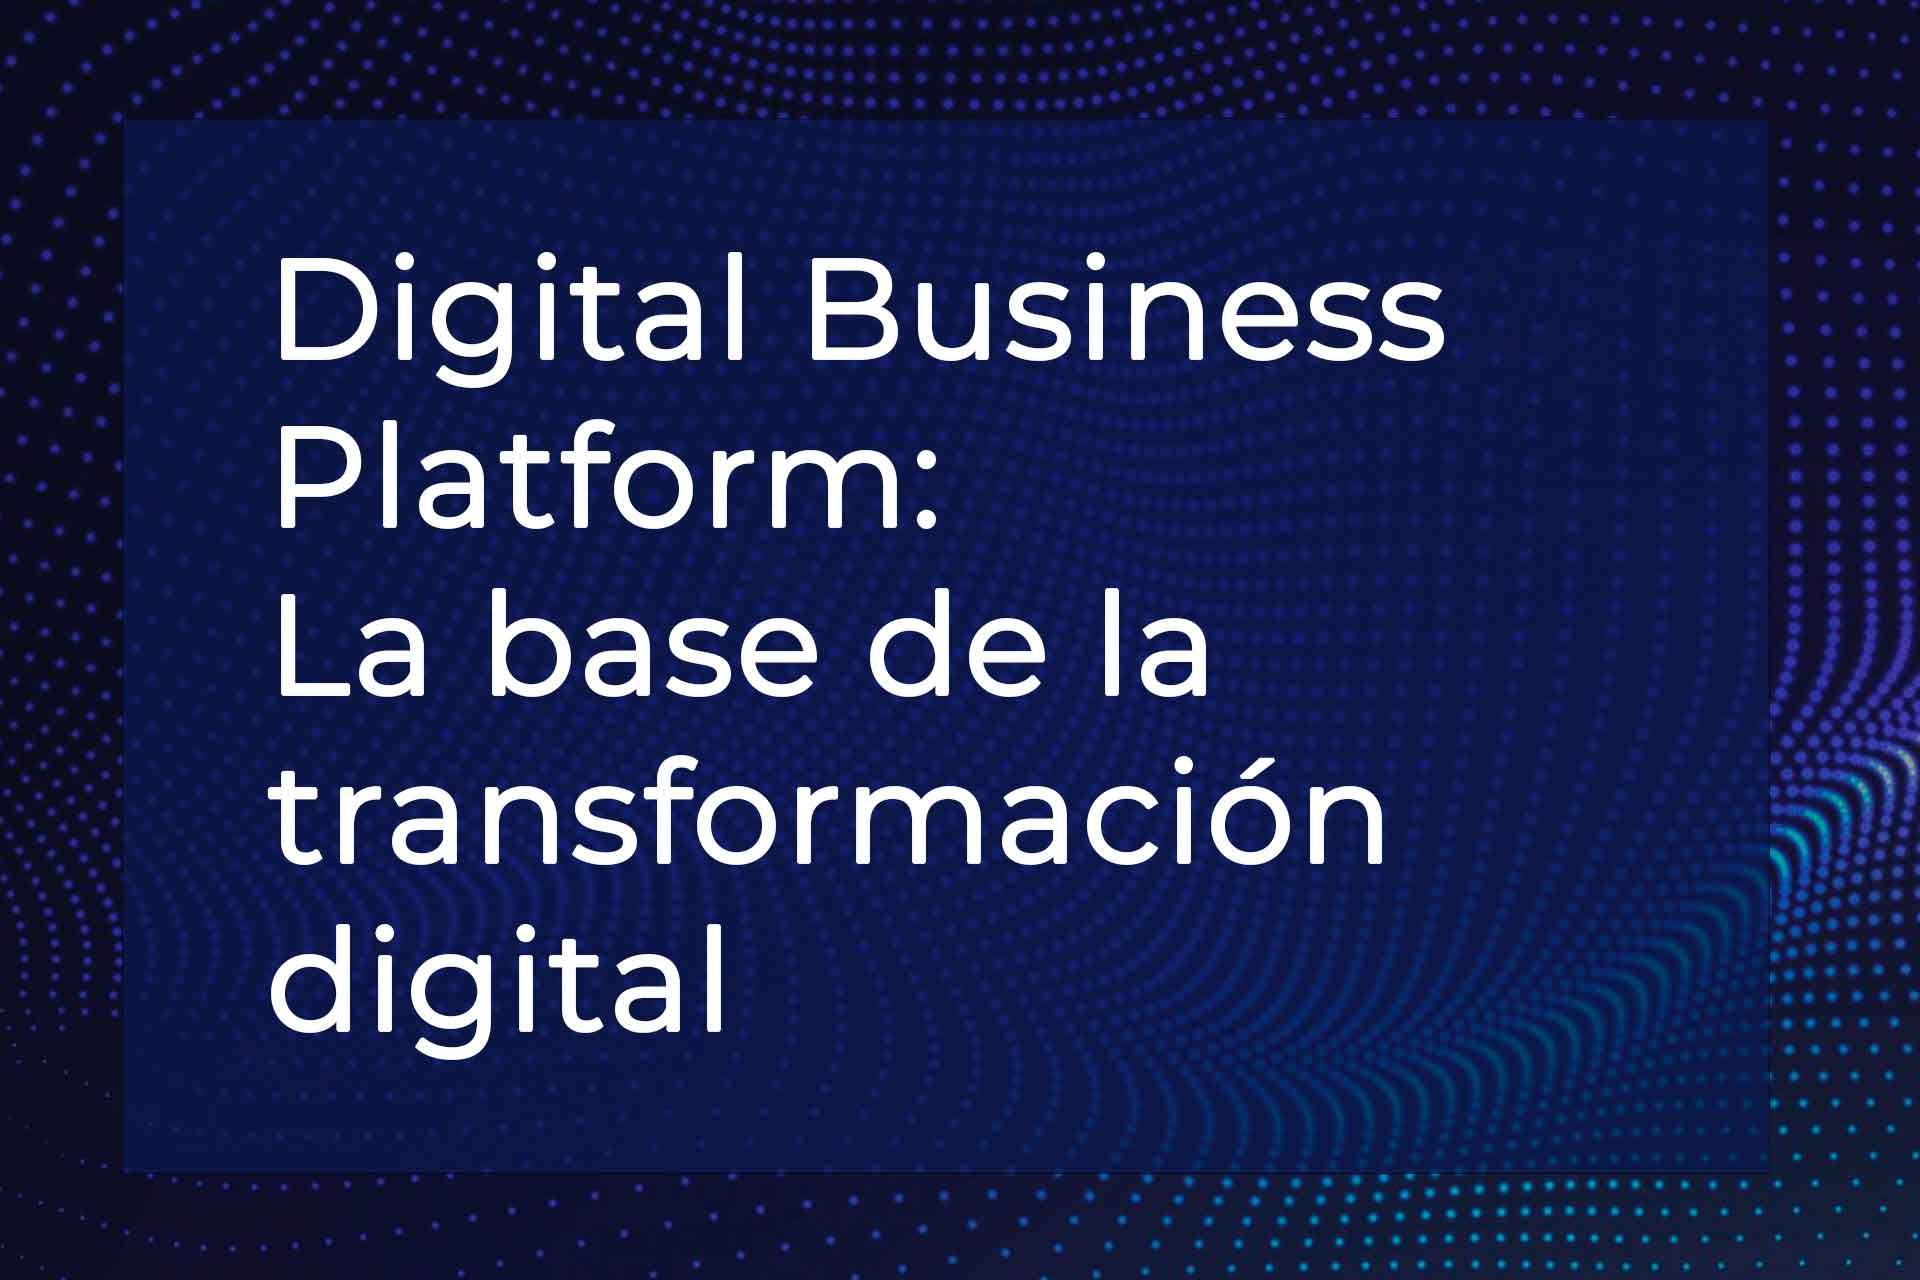 Digital Business Platform: La base de la transformación digital